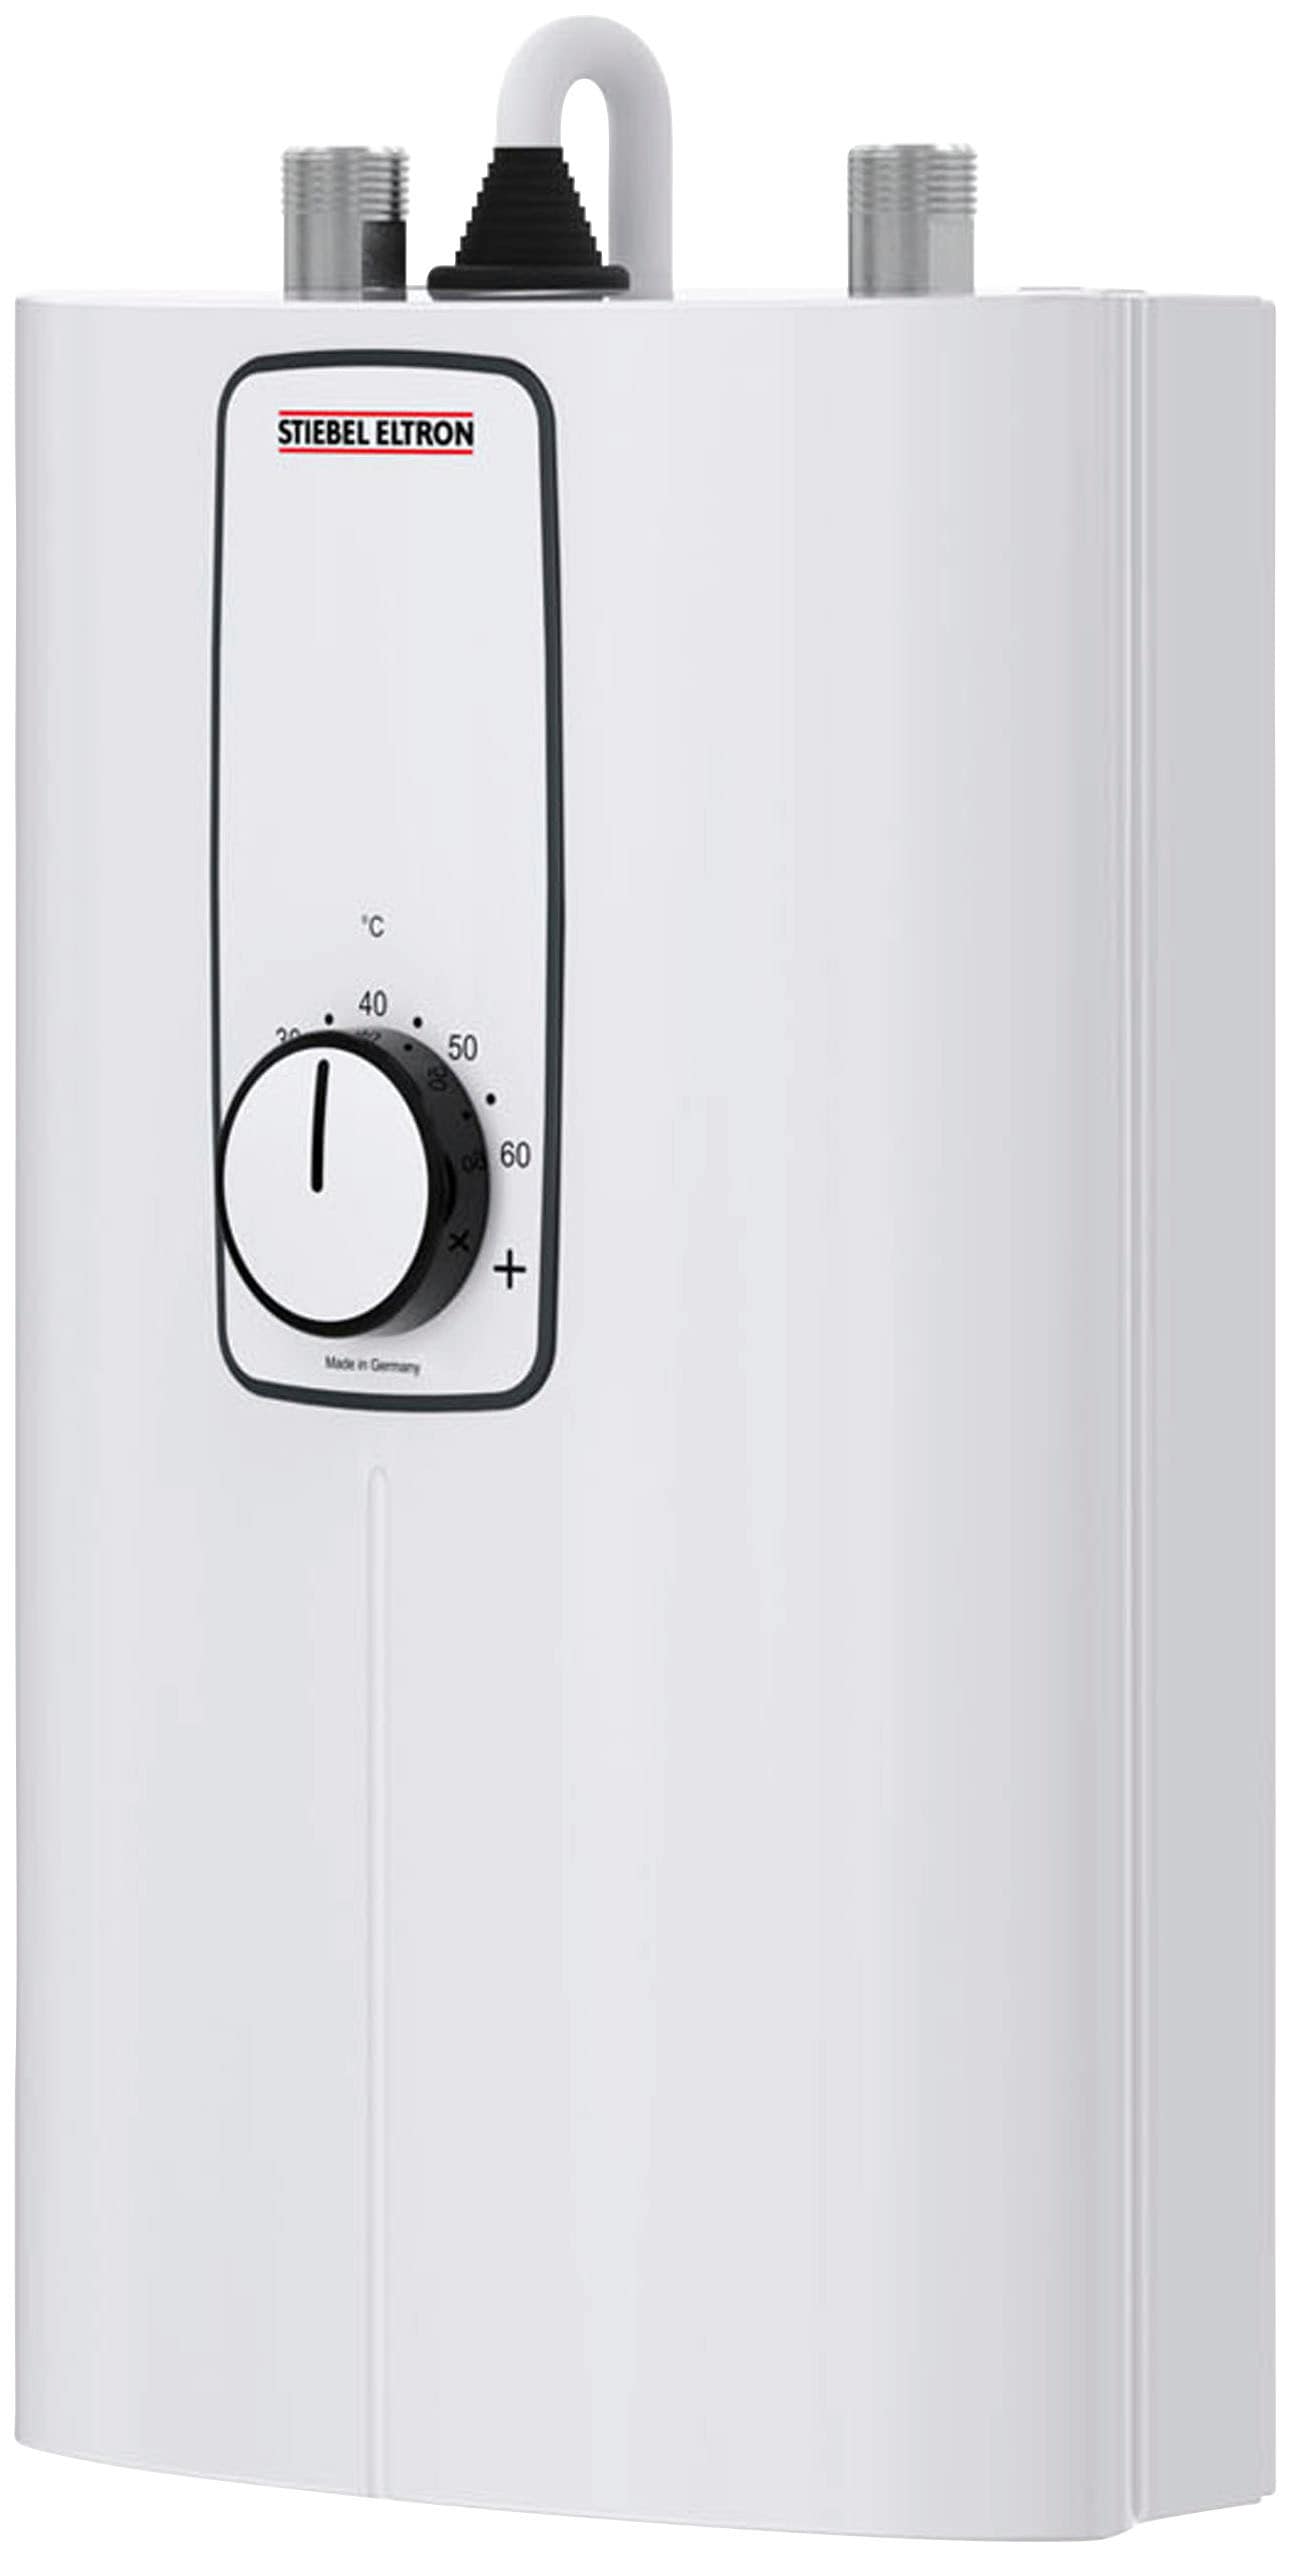 STIEBEL ELTRON Kompakt-Durchlauferhitzer »DCE 11/13 kW umschaltbar für die Küche«, 3i Technologie für konstante Warmwassertemperatur, platzsparend